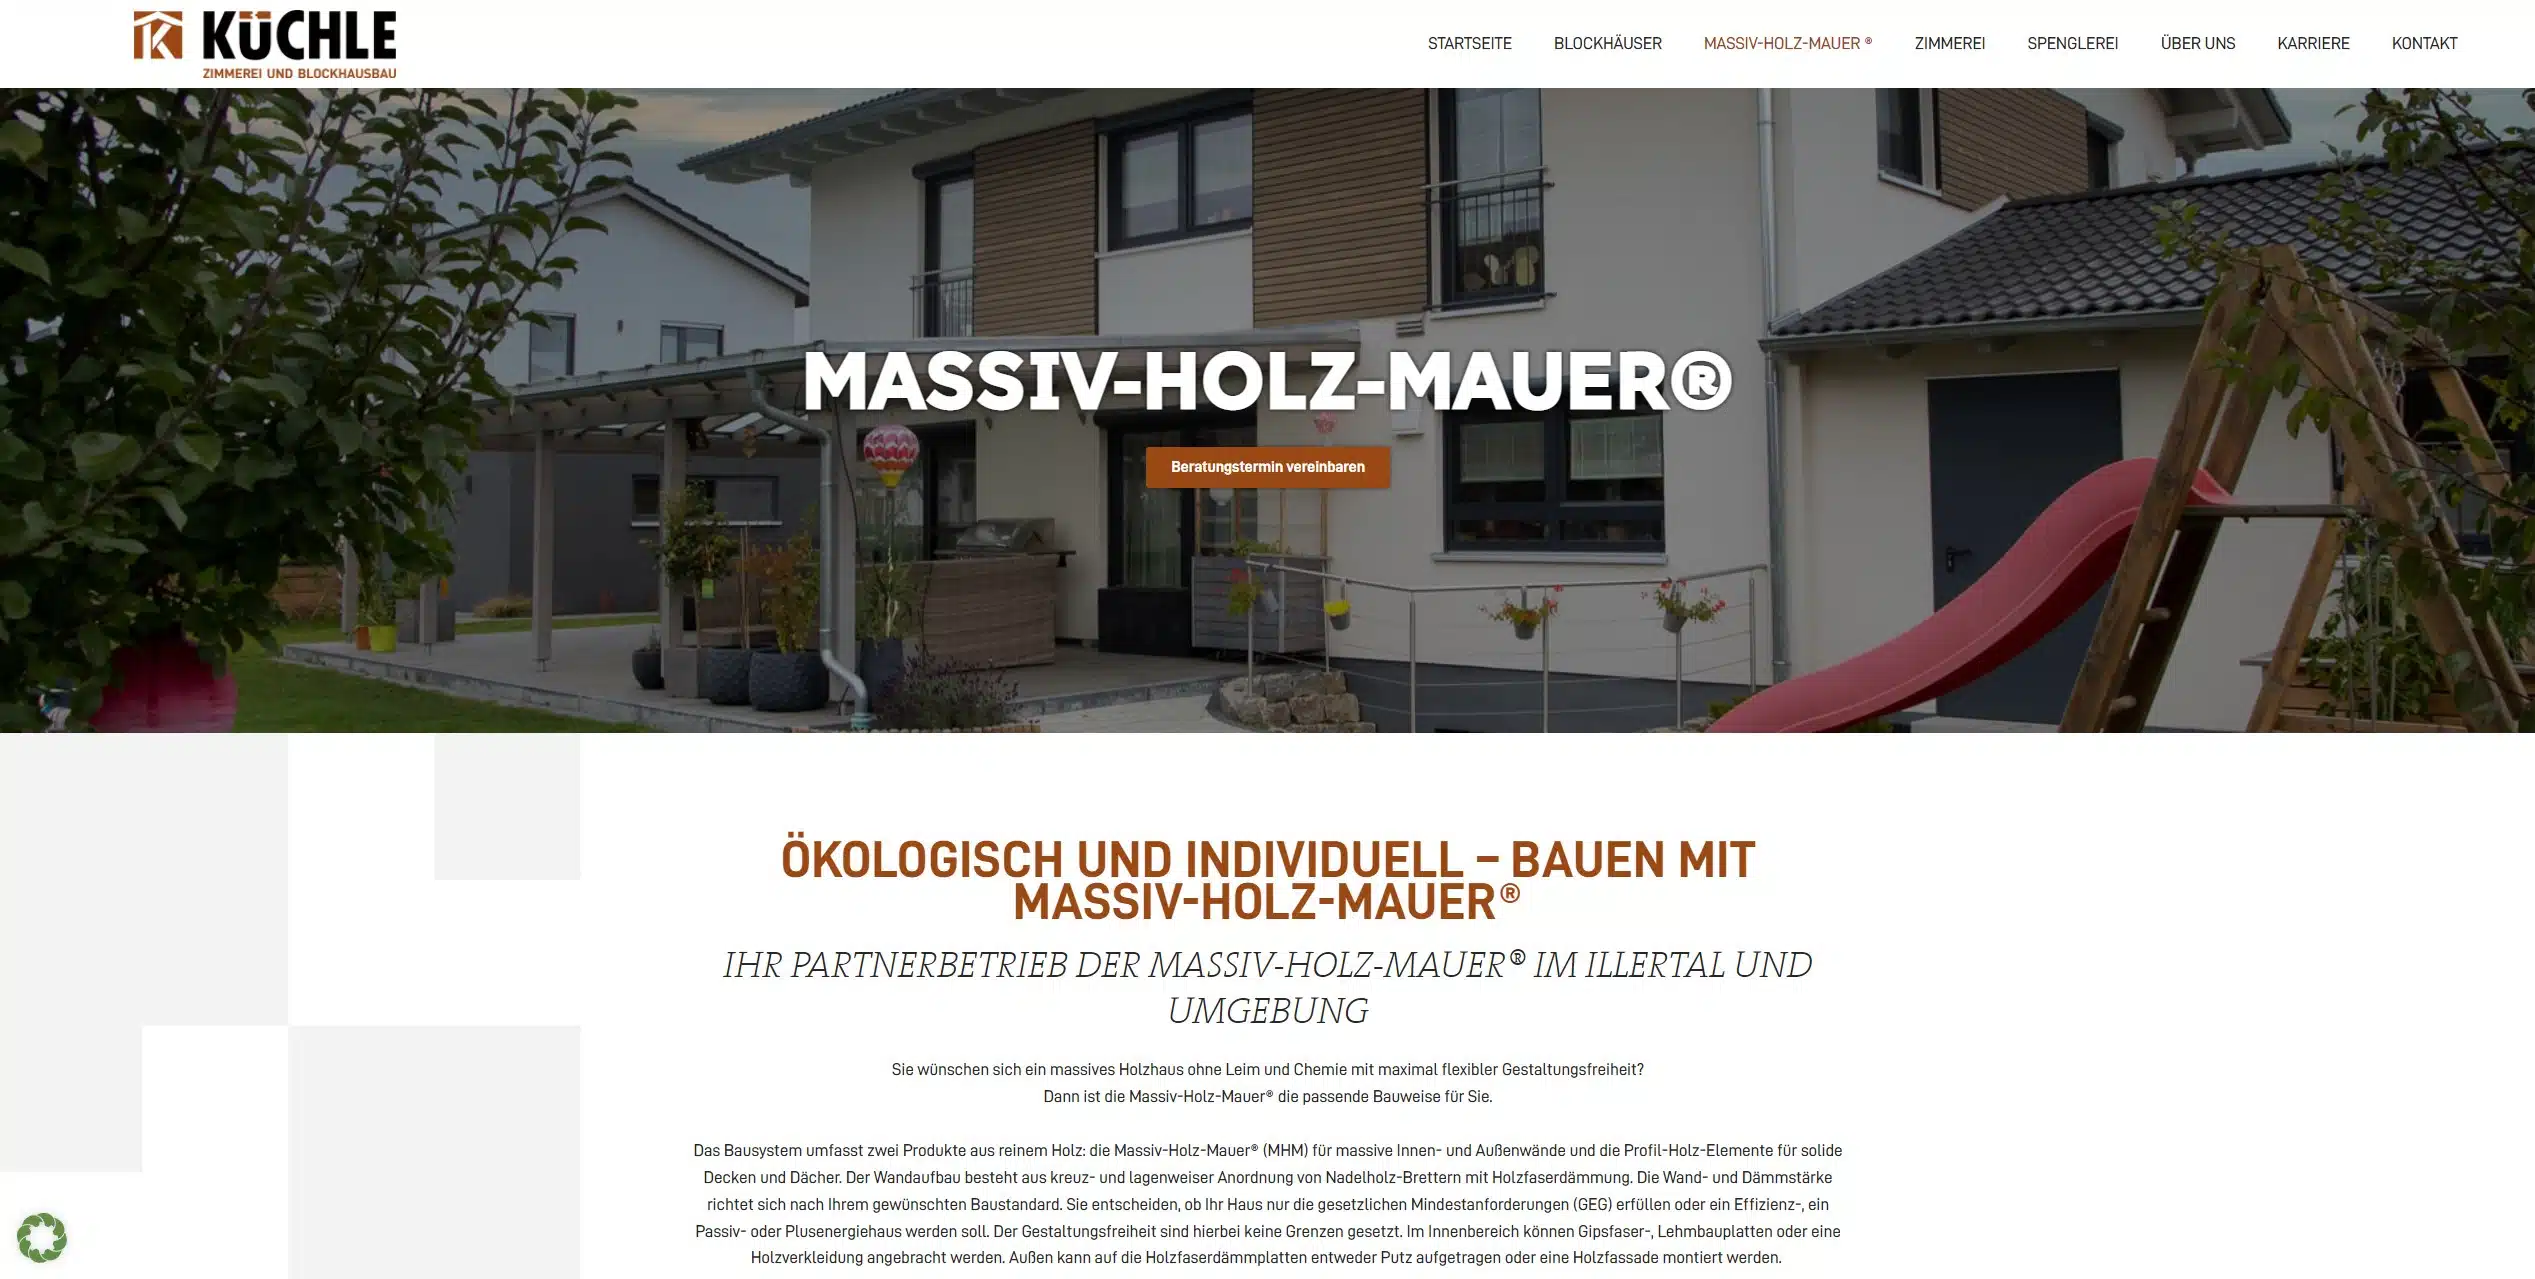 Kuechle Blockhaus Website neu